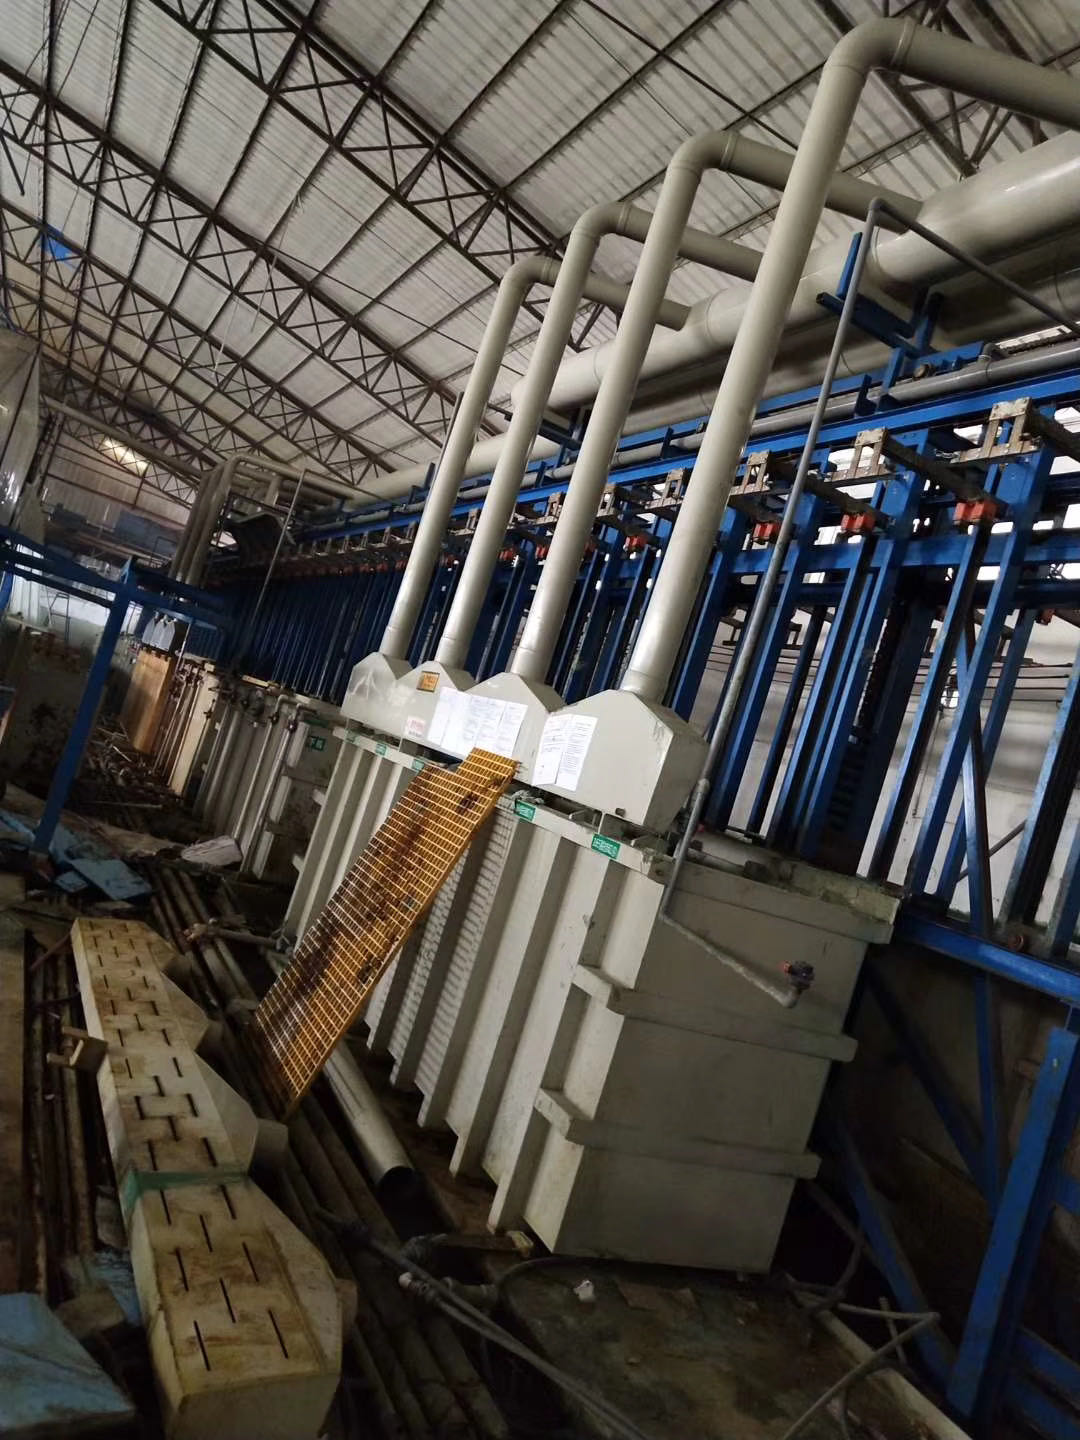 佛山顺德区结业工厂设备回收-佛山顺德区啤酒厂设备回收电话